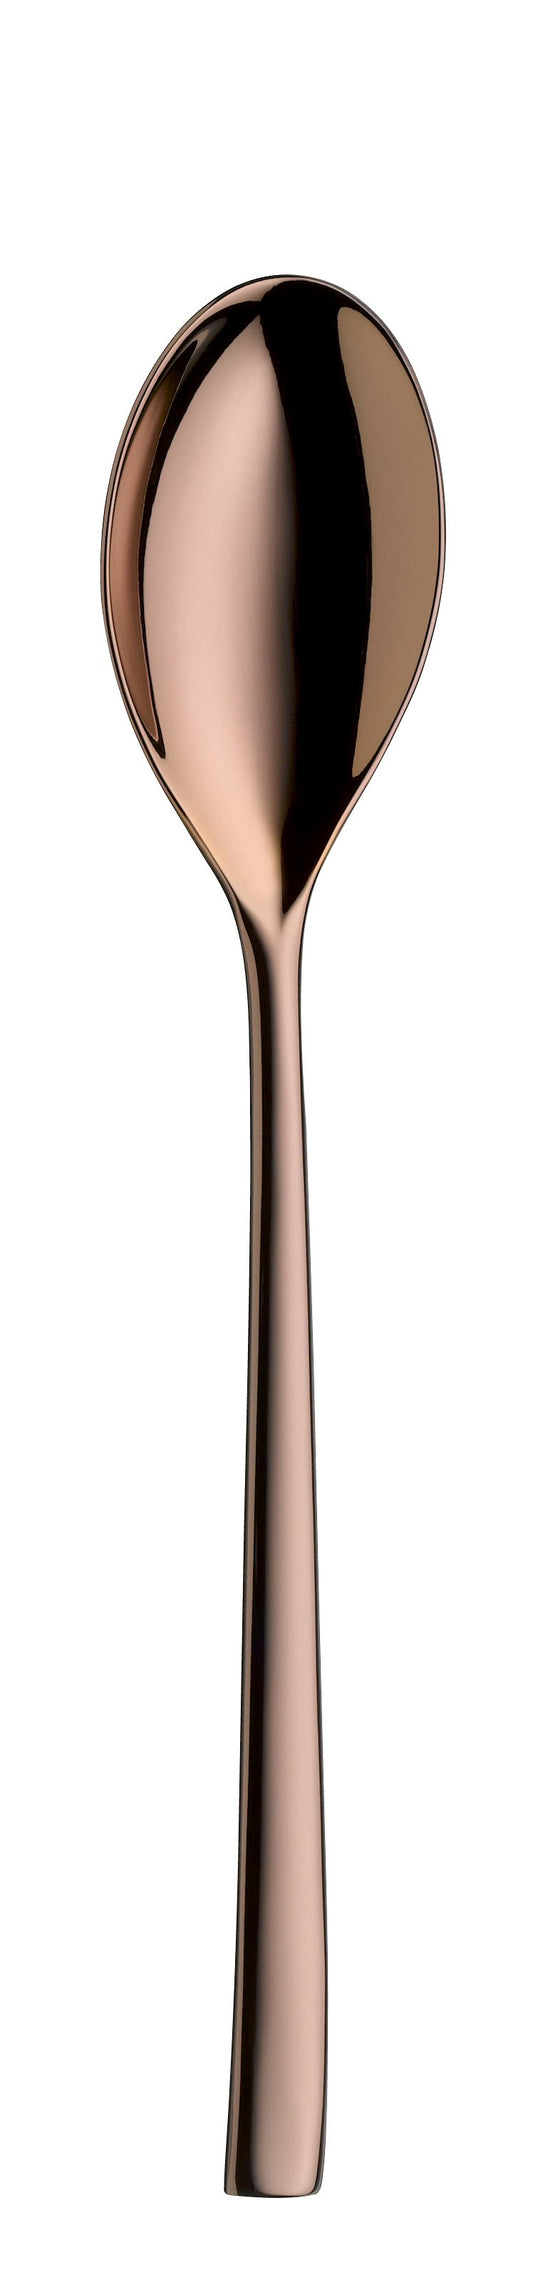 Table spoon TALIA PVD copper 230mm